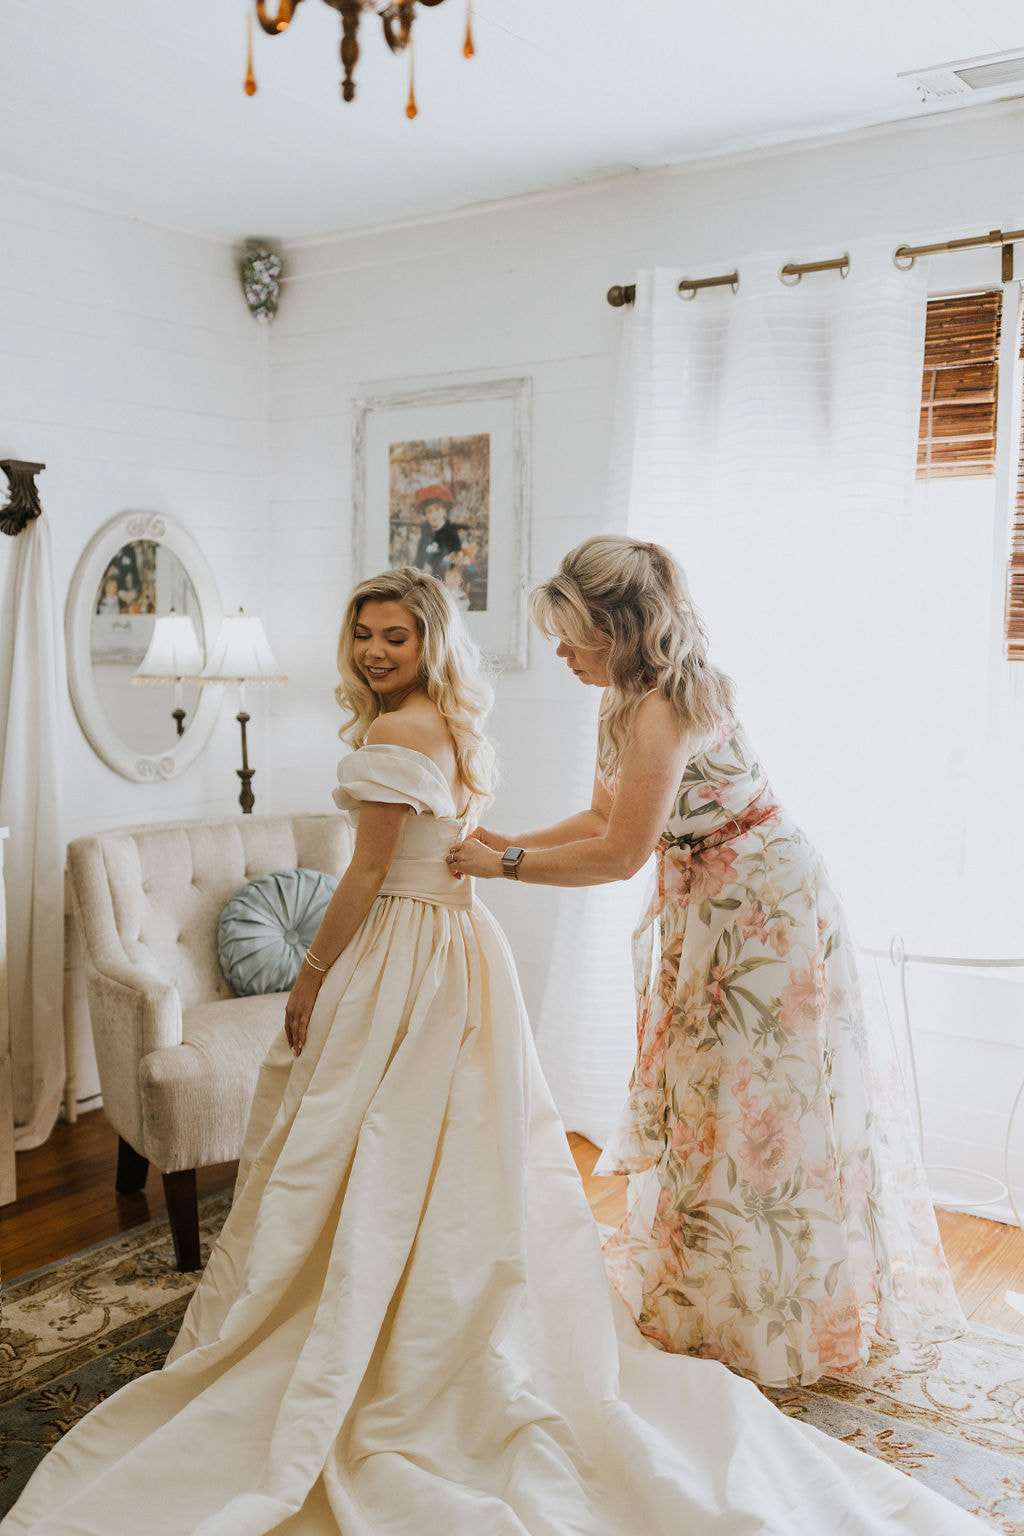 mother buttoning bride's dress in elegant bridal suite